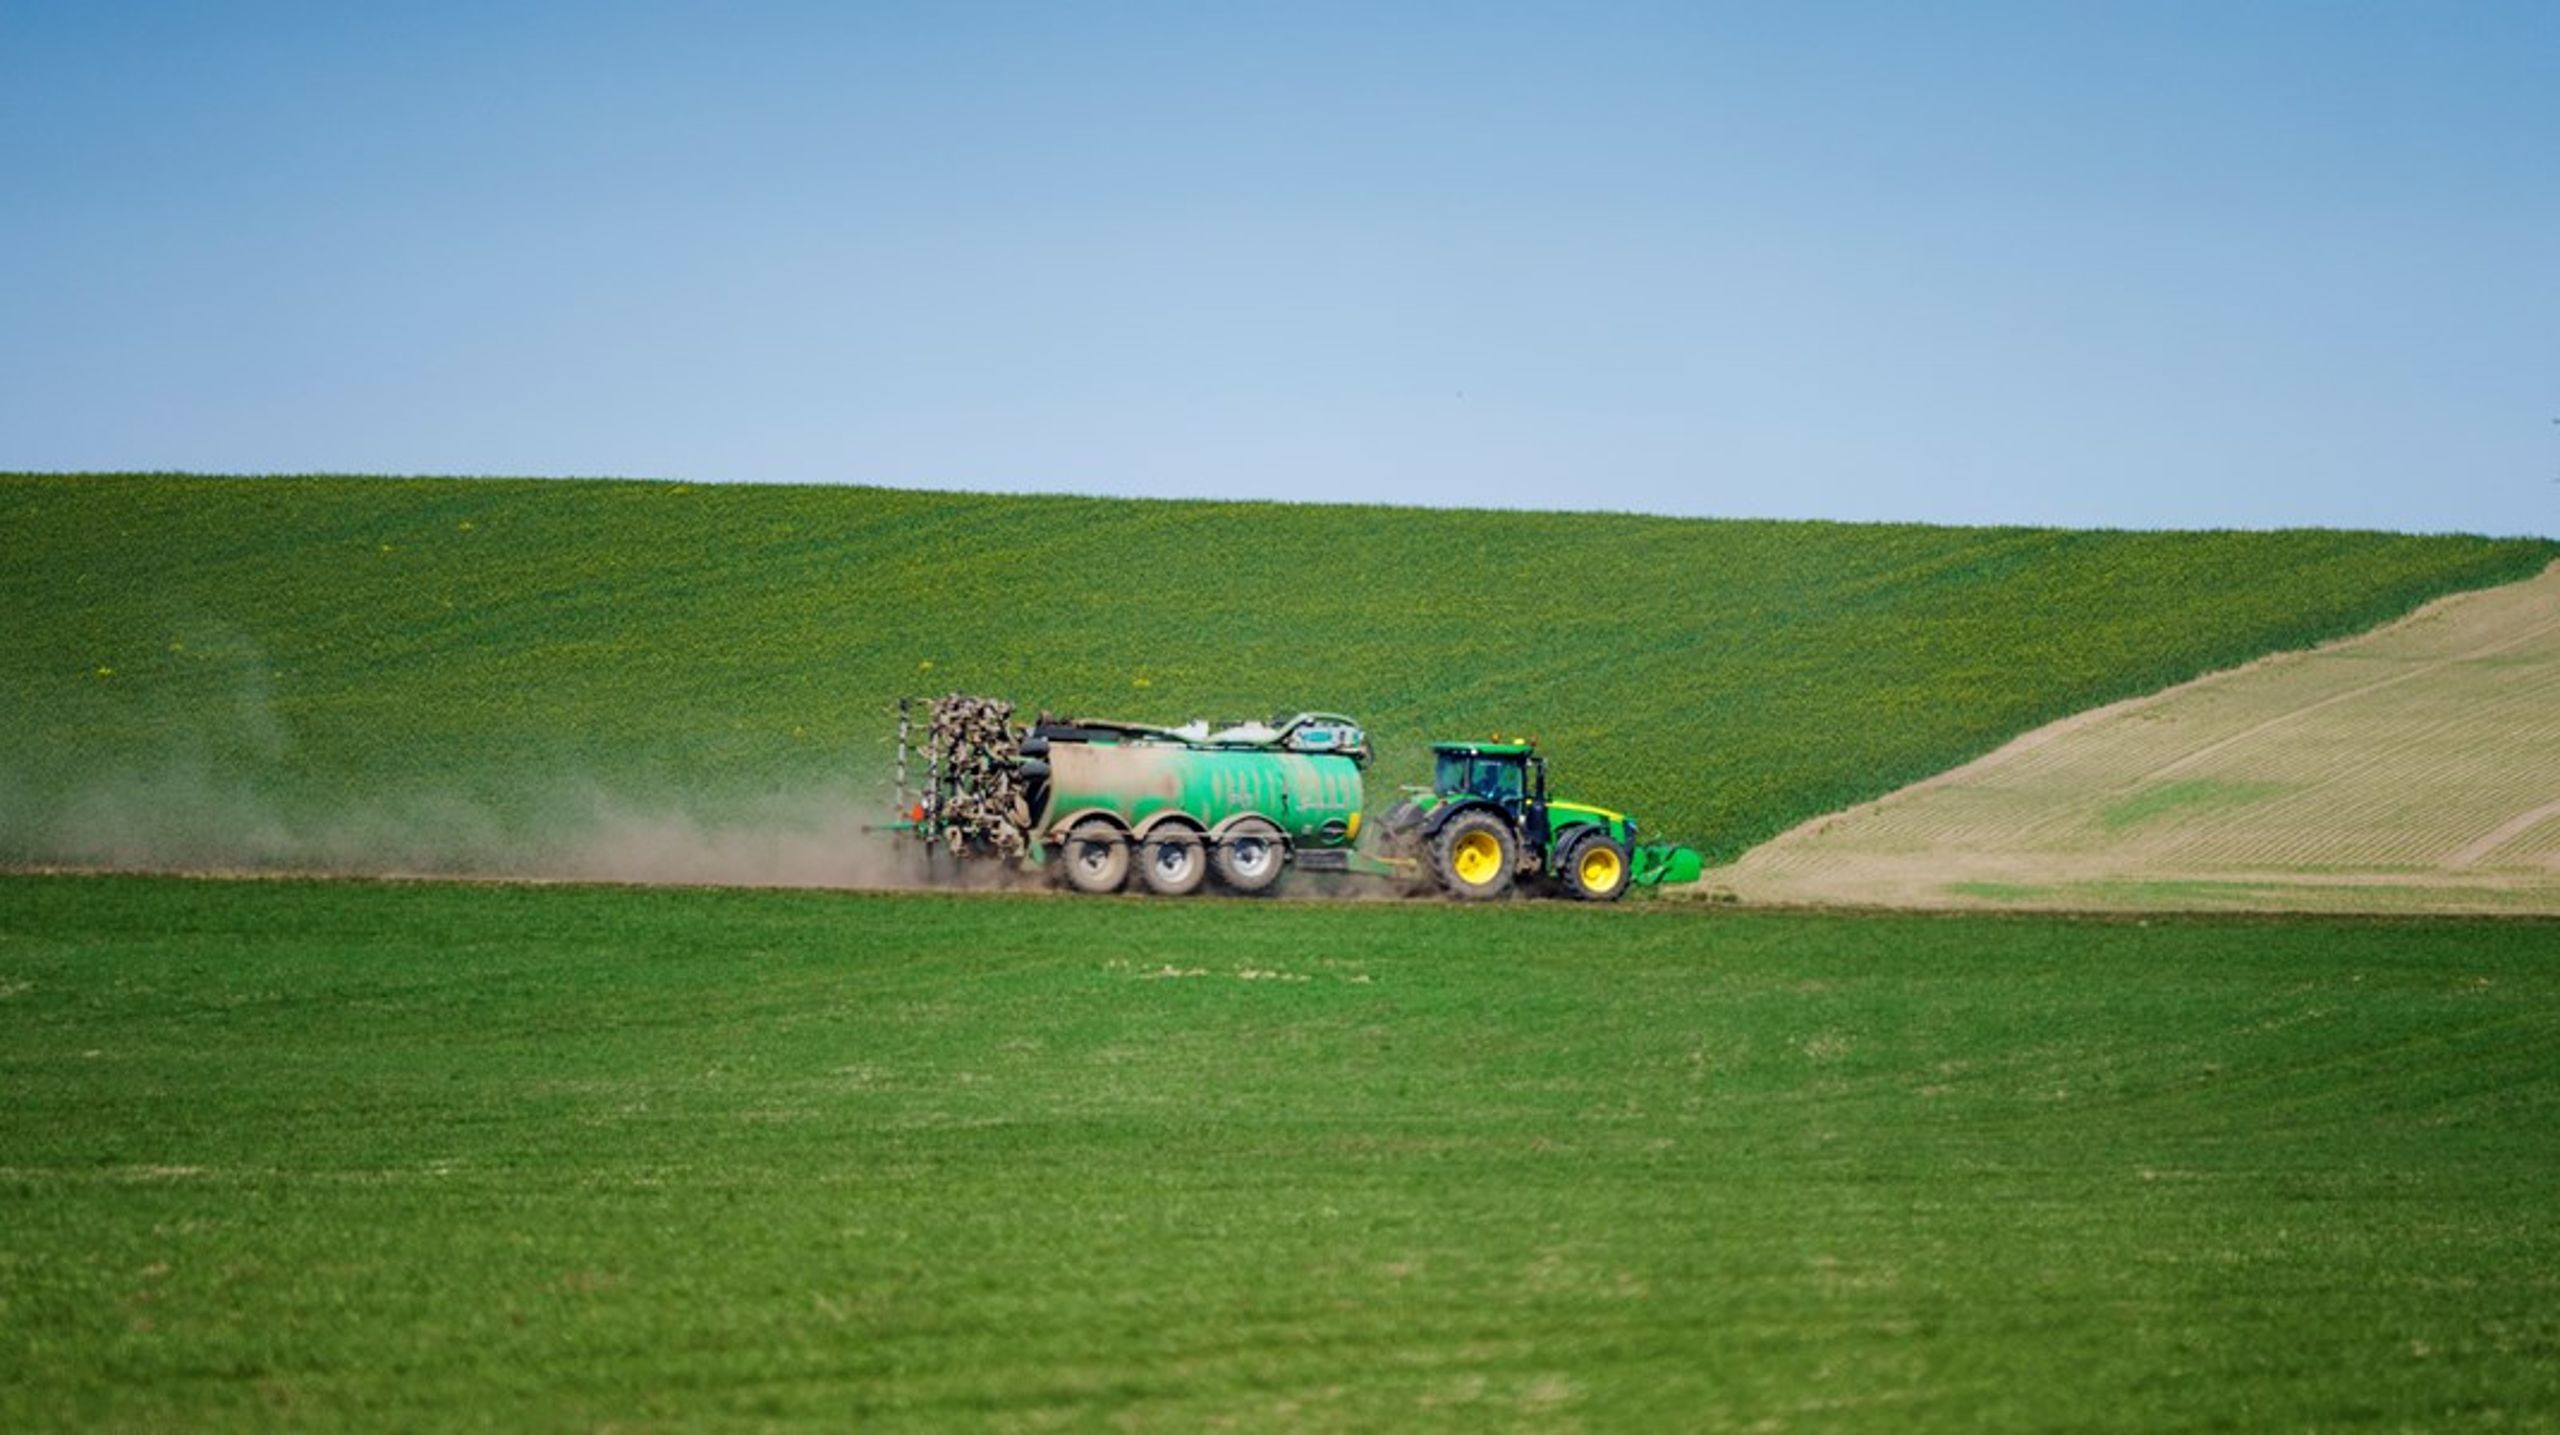 Hvis landbrugets forbrug af PFAS-holdige pesticider ikke bliver en del af regeringens indsats, vil rent grundvand snart være noget, vi havde i gamle dage, skriver biolog&nbsp;Søren Wium-Andersen.&nbsp;